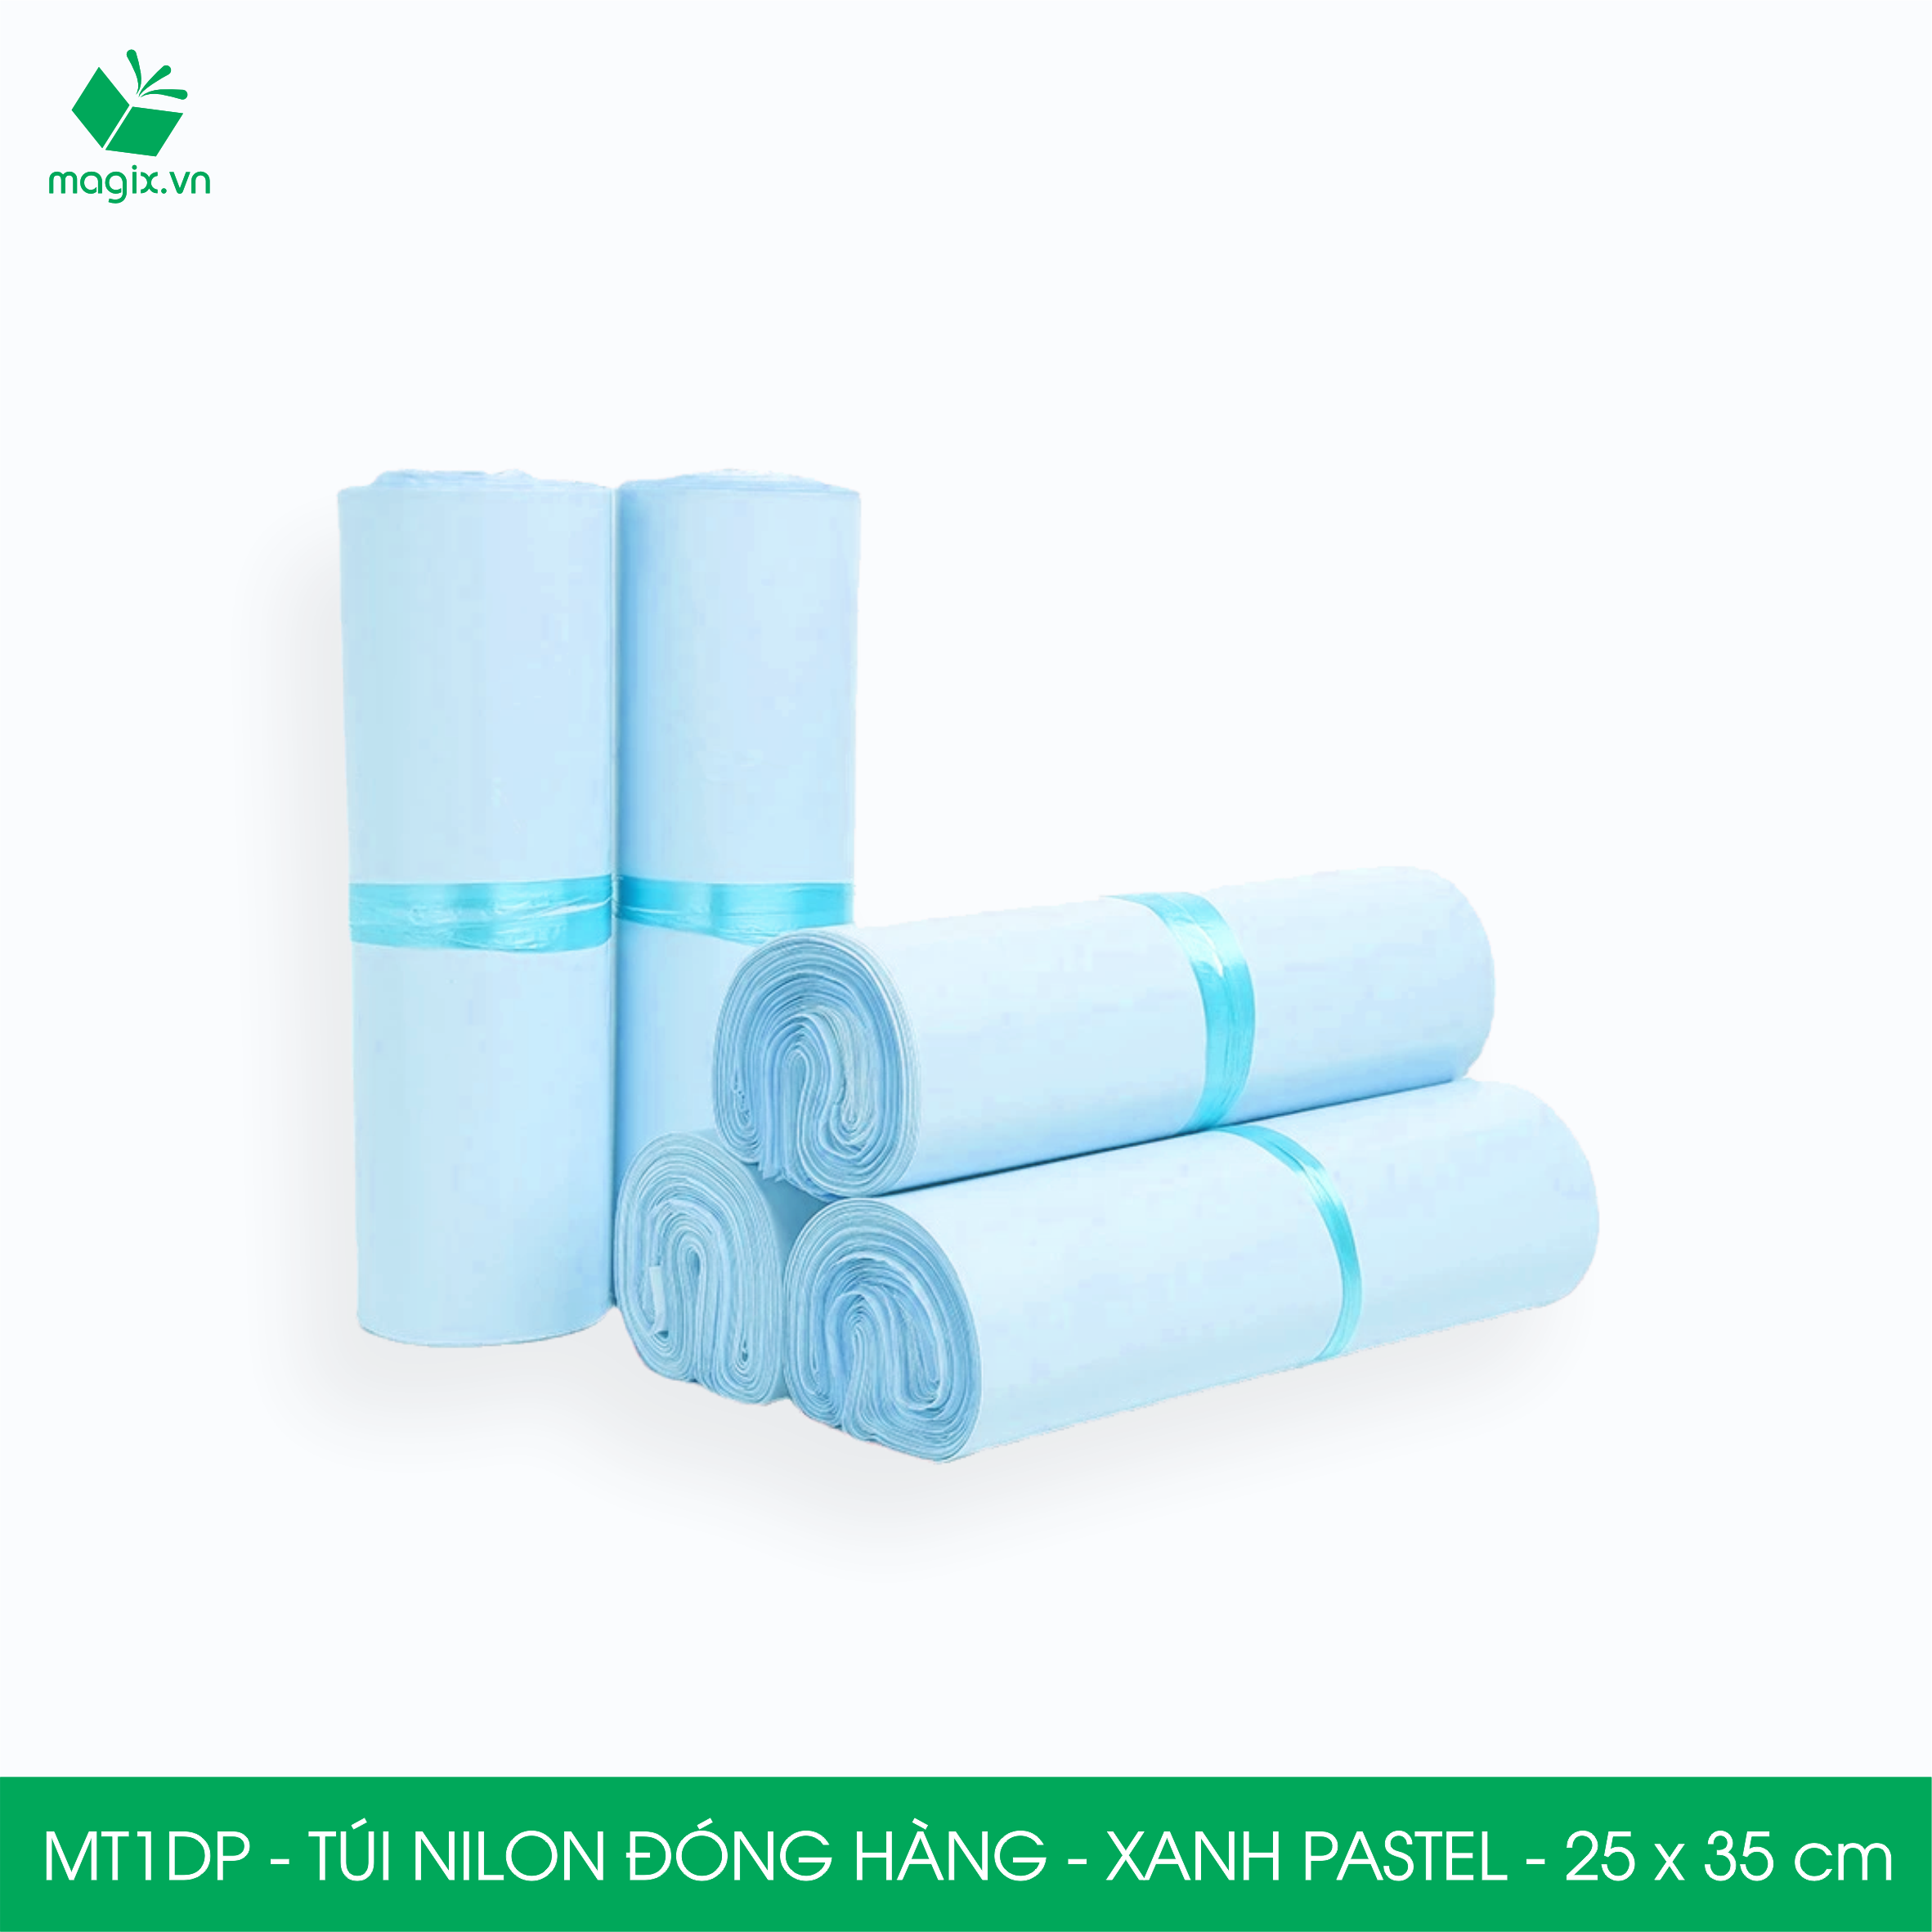 MT1DP - 25x35 cm - Túi nilon gói hàng - 200 túi niêm phong đóng hàng màu xanh pastel